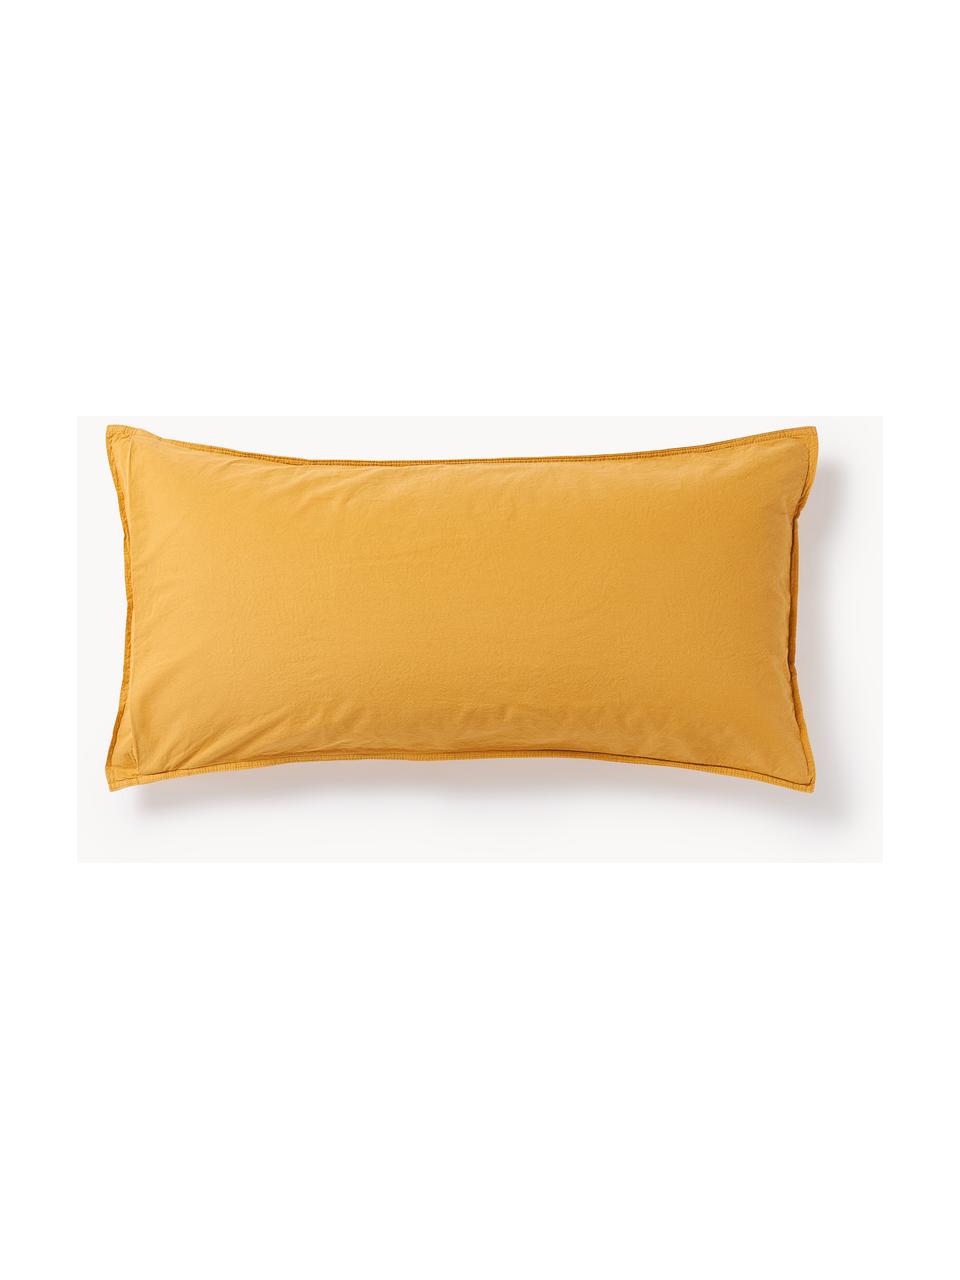 Poszewka na poduszkę z bawełny Darlyn, Musztardowy, S 40 x D 80 cm